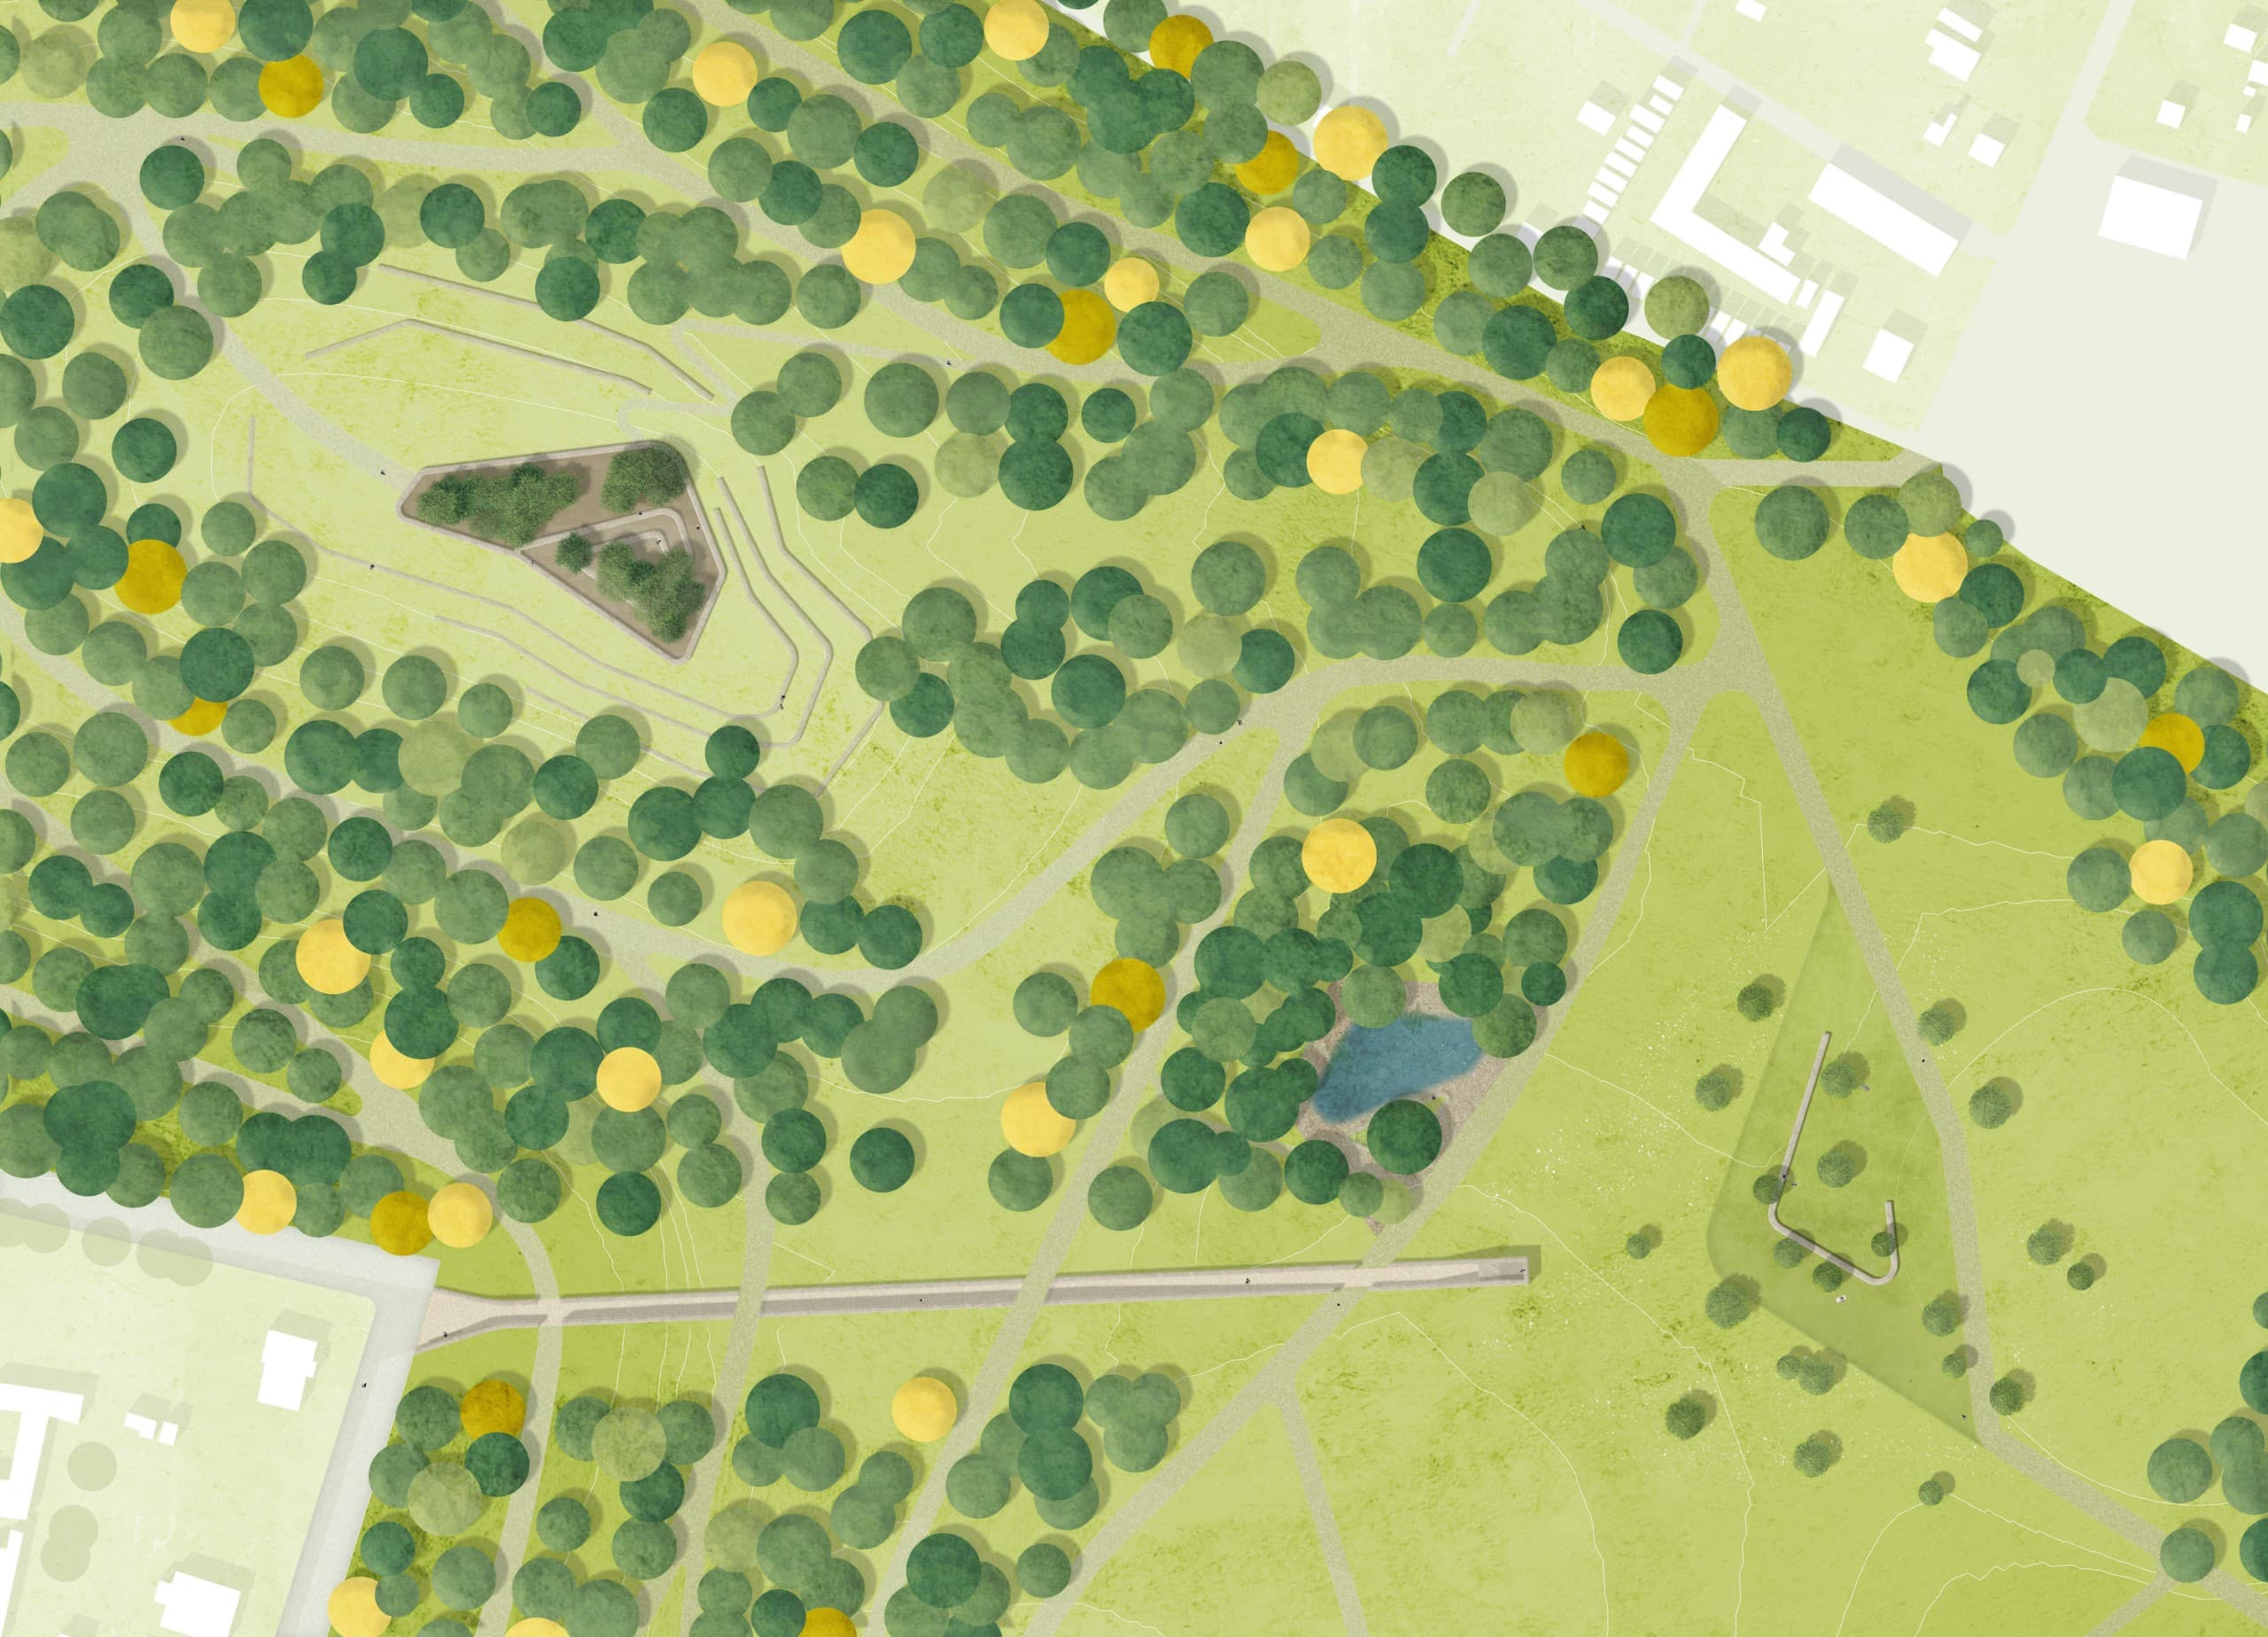 Lageplan vom Kernbereich des Parks, Grafik: Jannes Klipp